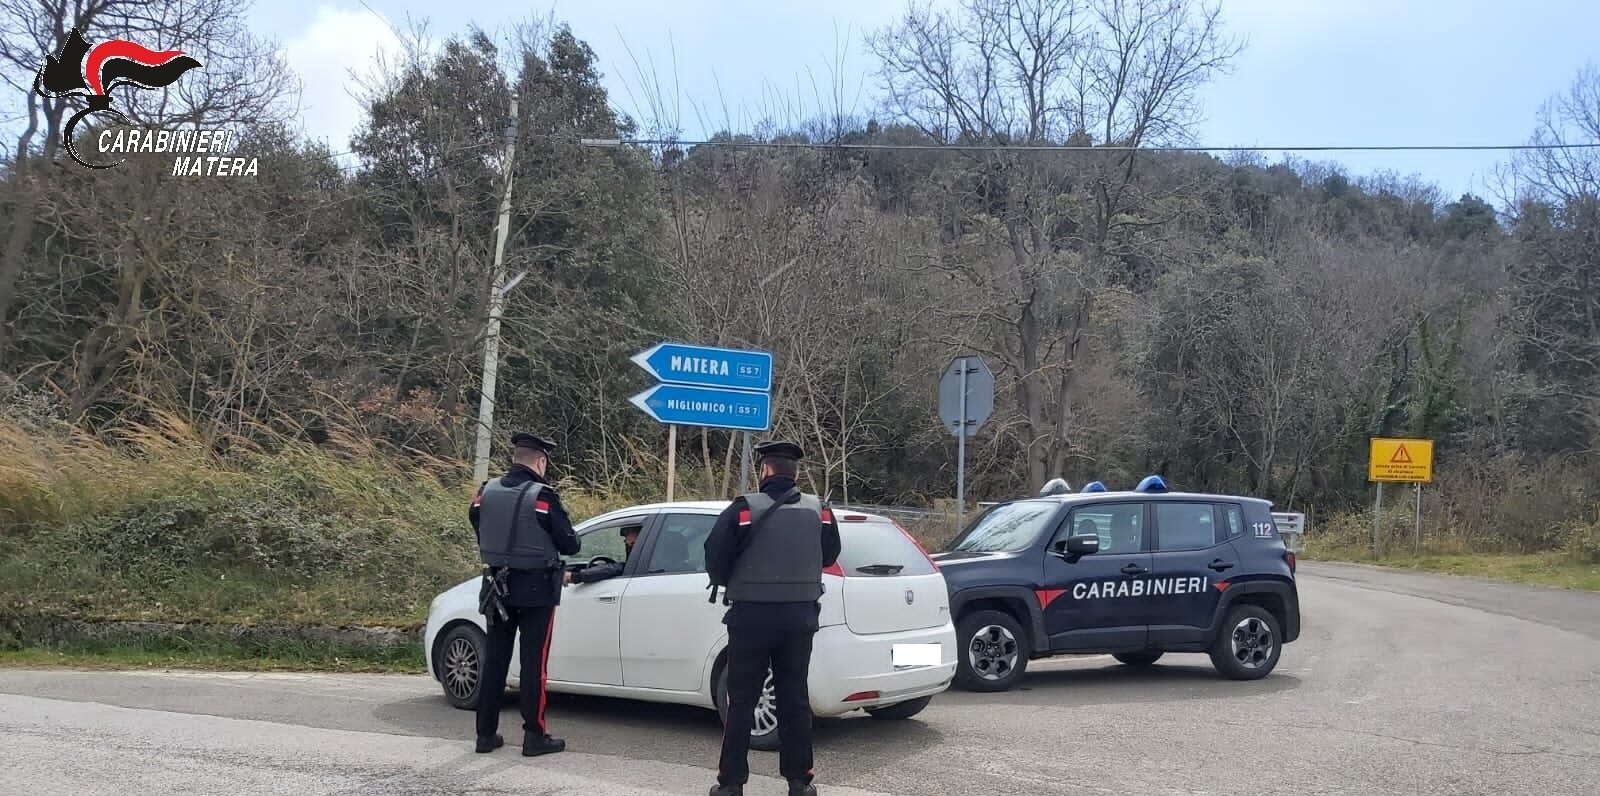 In trasferta a Miglionico dalla Puglia con droga in auto: quattro persone denunciate dai Carabinieri